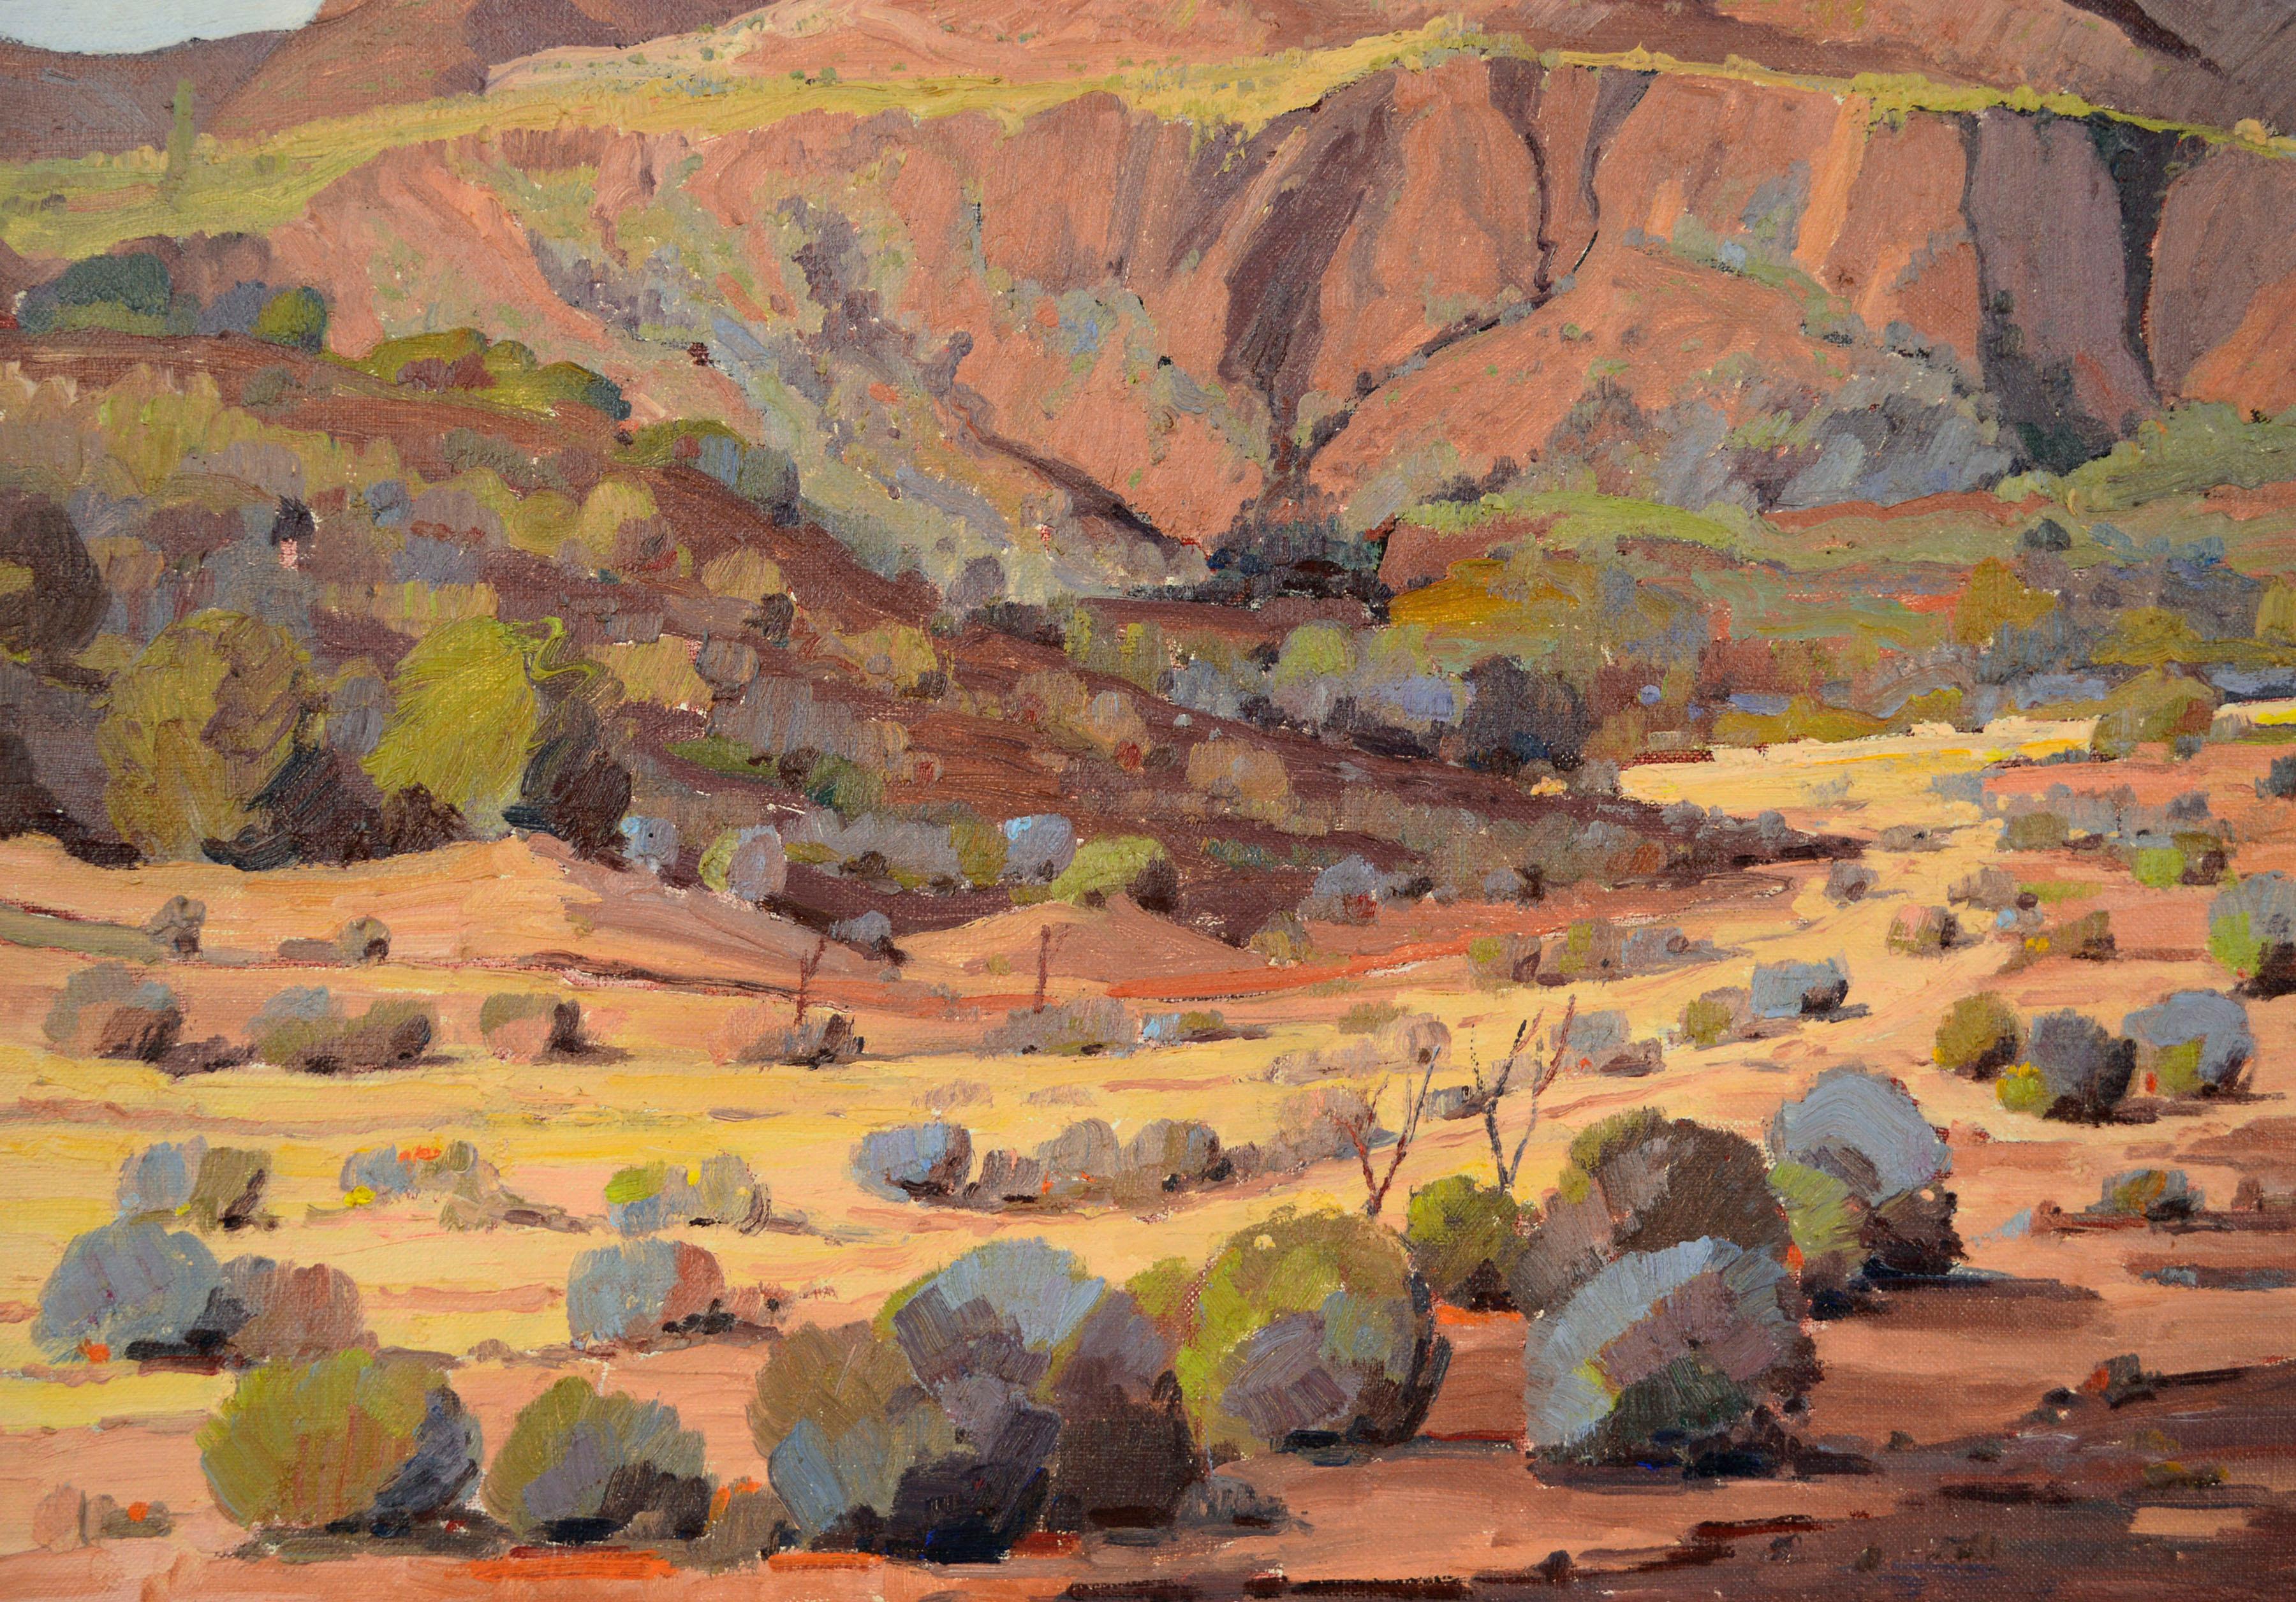 Picacho Peak, Arizona 1945 - Paysage du désert du sud-ouest mi-siècle par Dejoiner

Magnifique paysage impressionniste du désert du sud-ouest datant du milieu des années 1940, réalisé par l'artiste californien Luther Evans Dejoiner (américain,